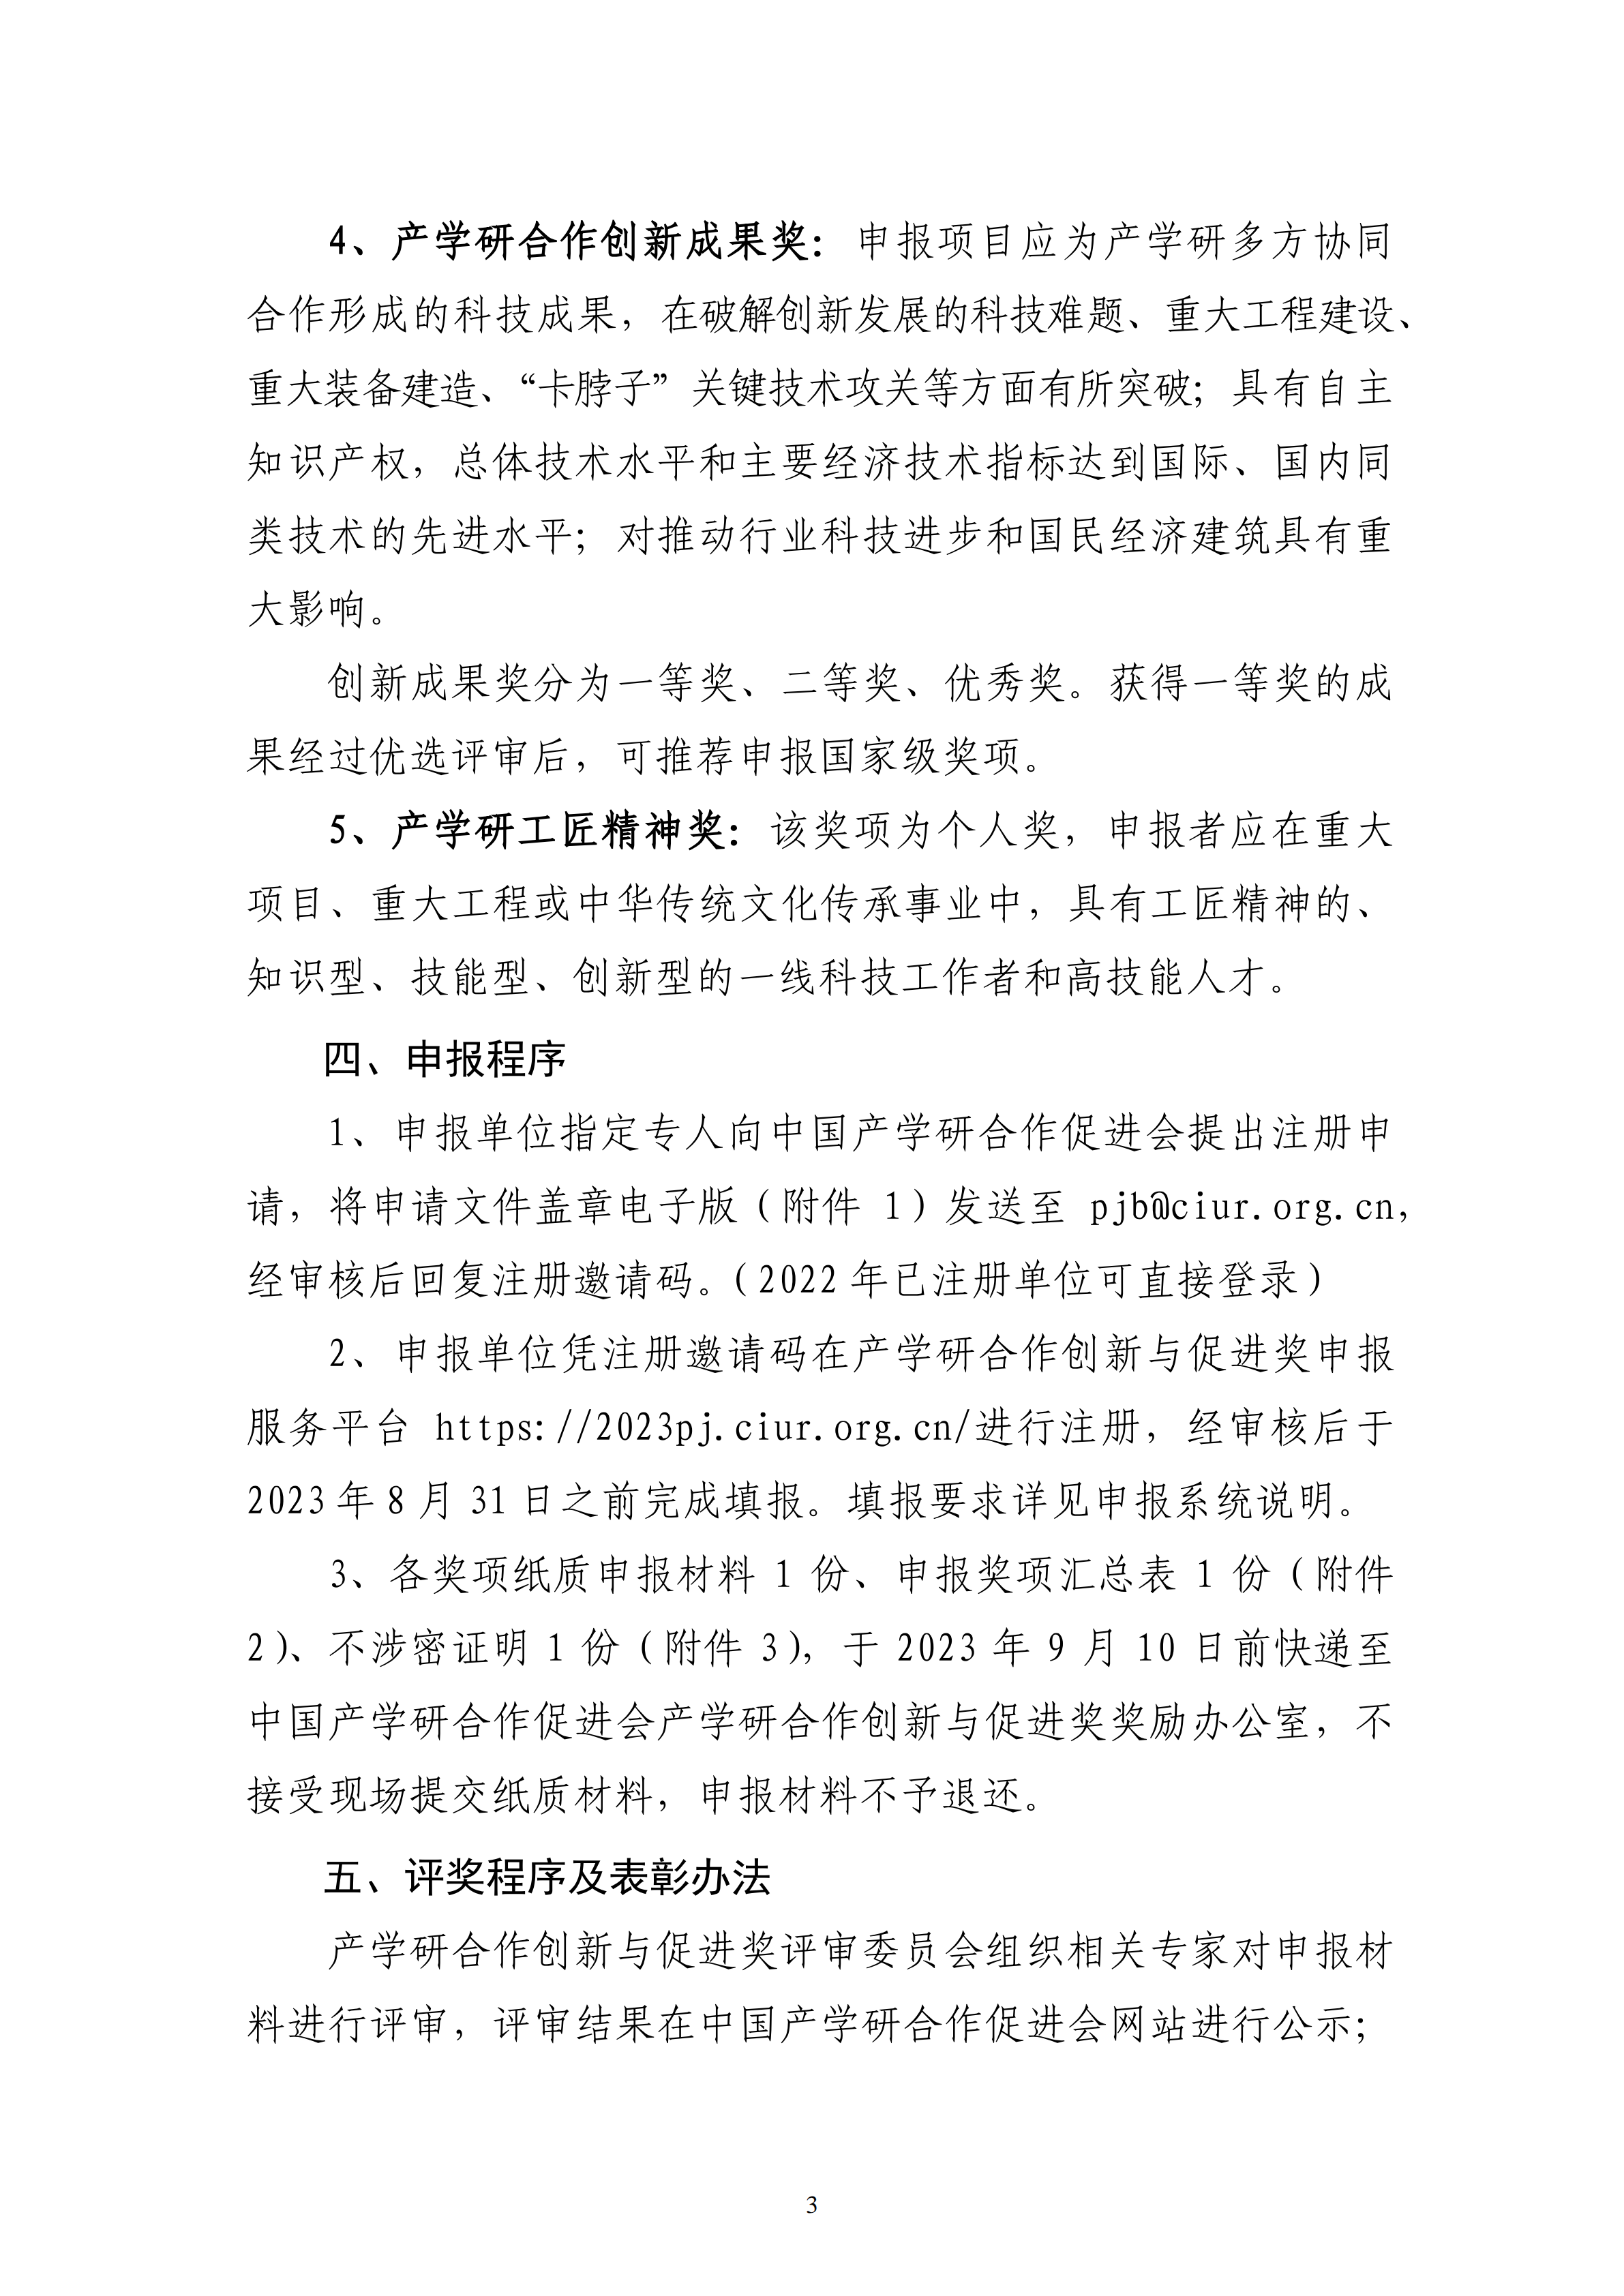 2023年中国产学研合作促进会产学研合作创新与促进奖申报通知_02.png